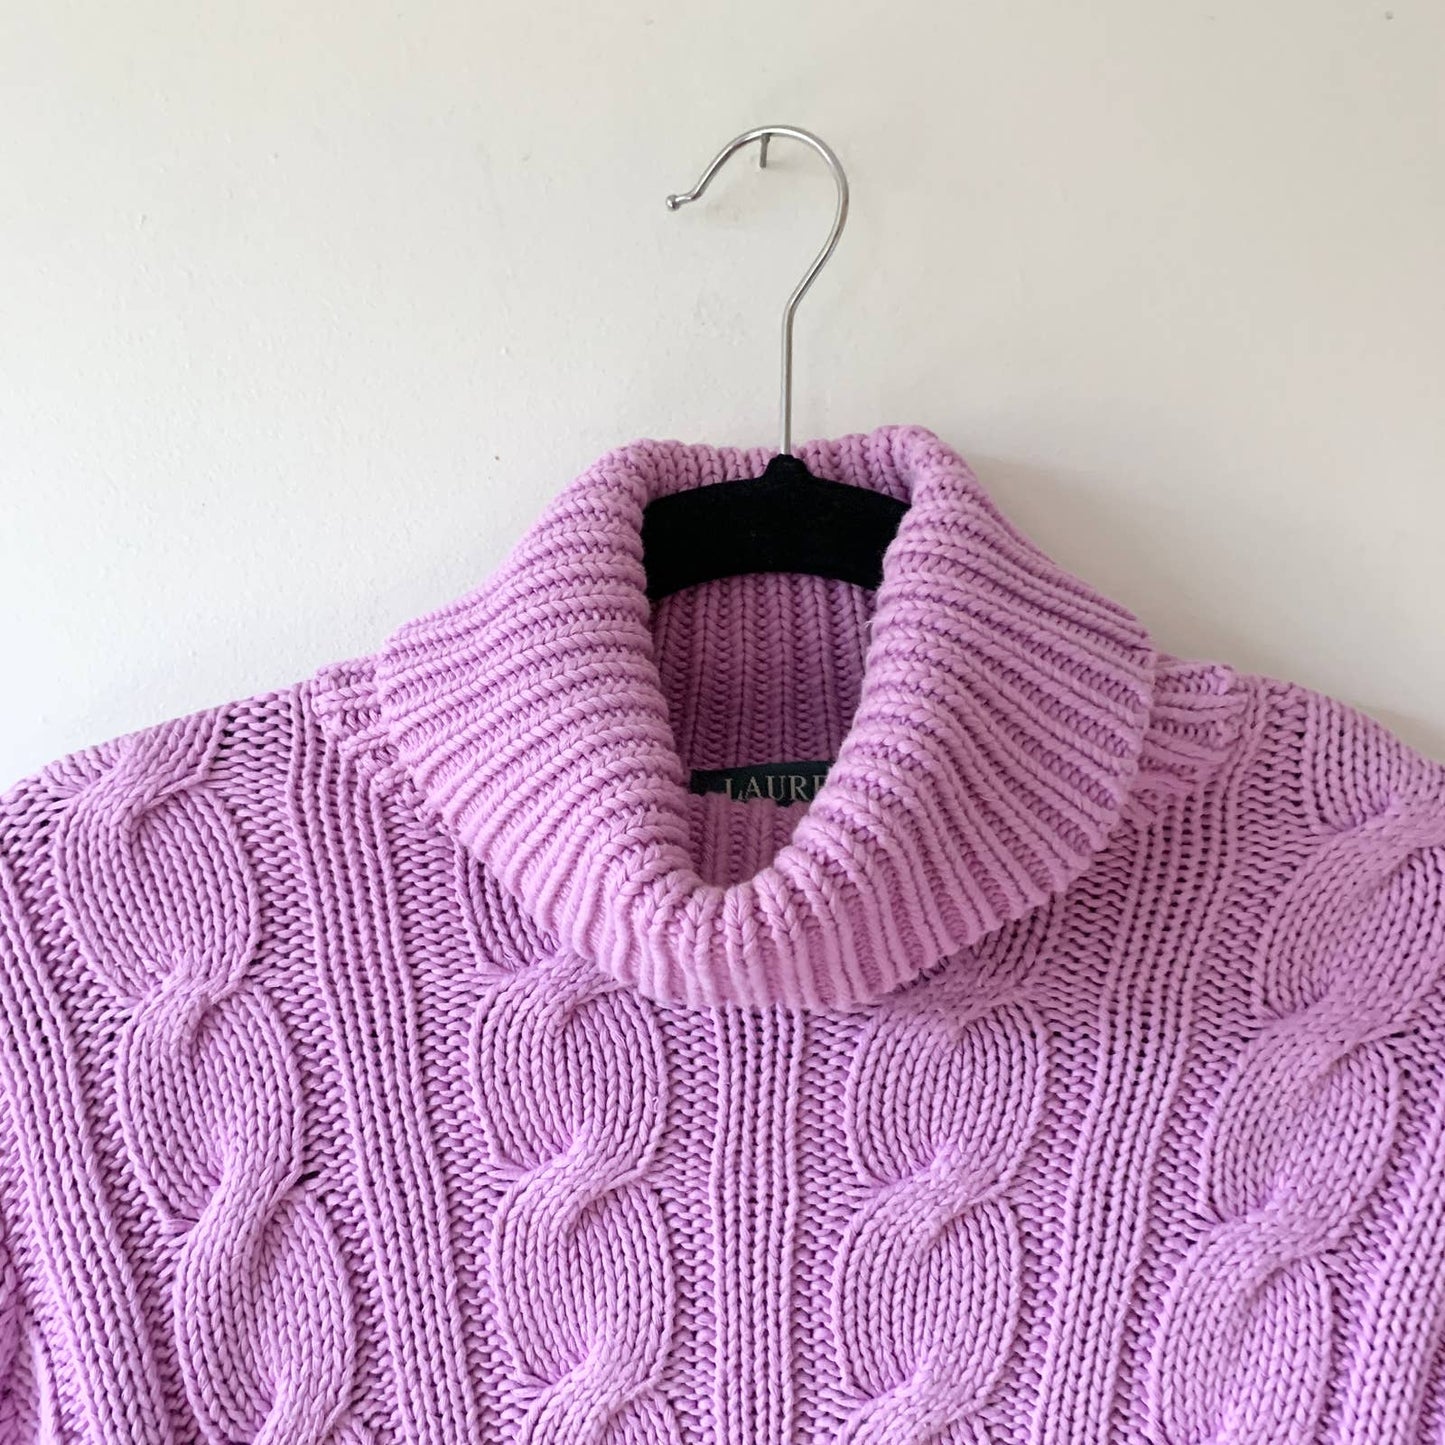 Ralph Lauren Cotton Purple Lilac Cable Knit Turtleneck Sweater Large